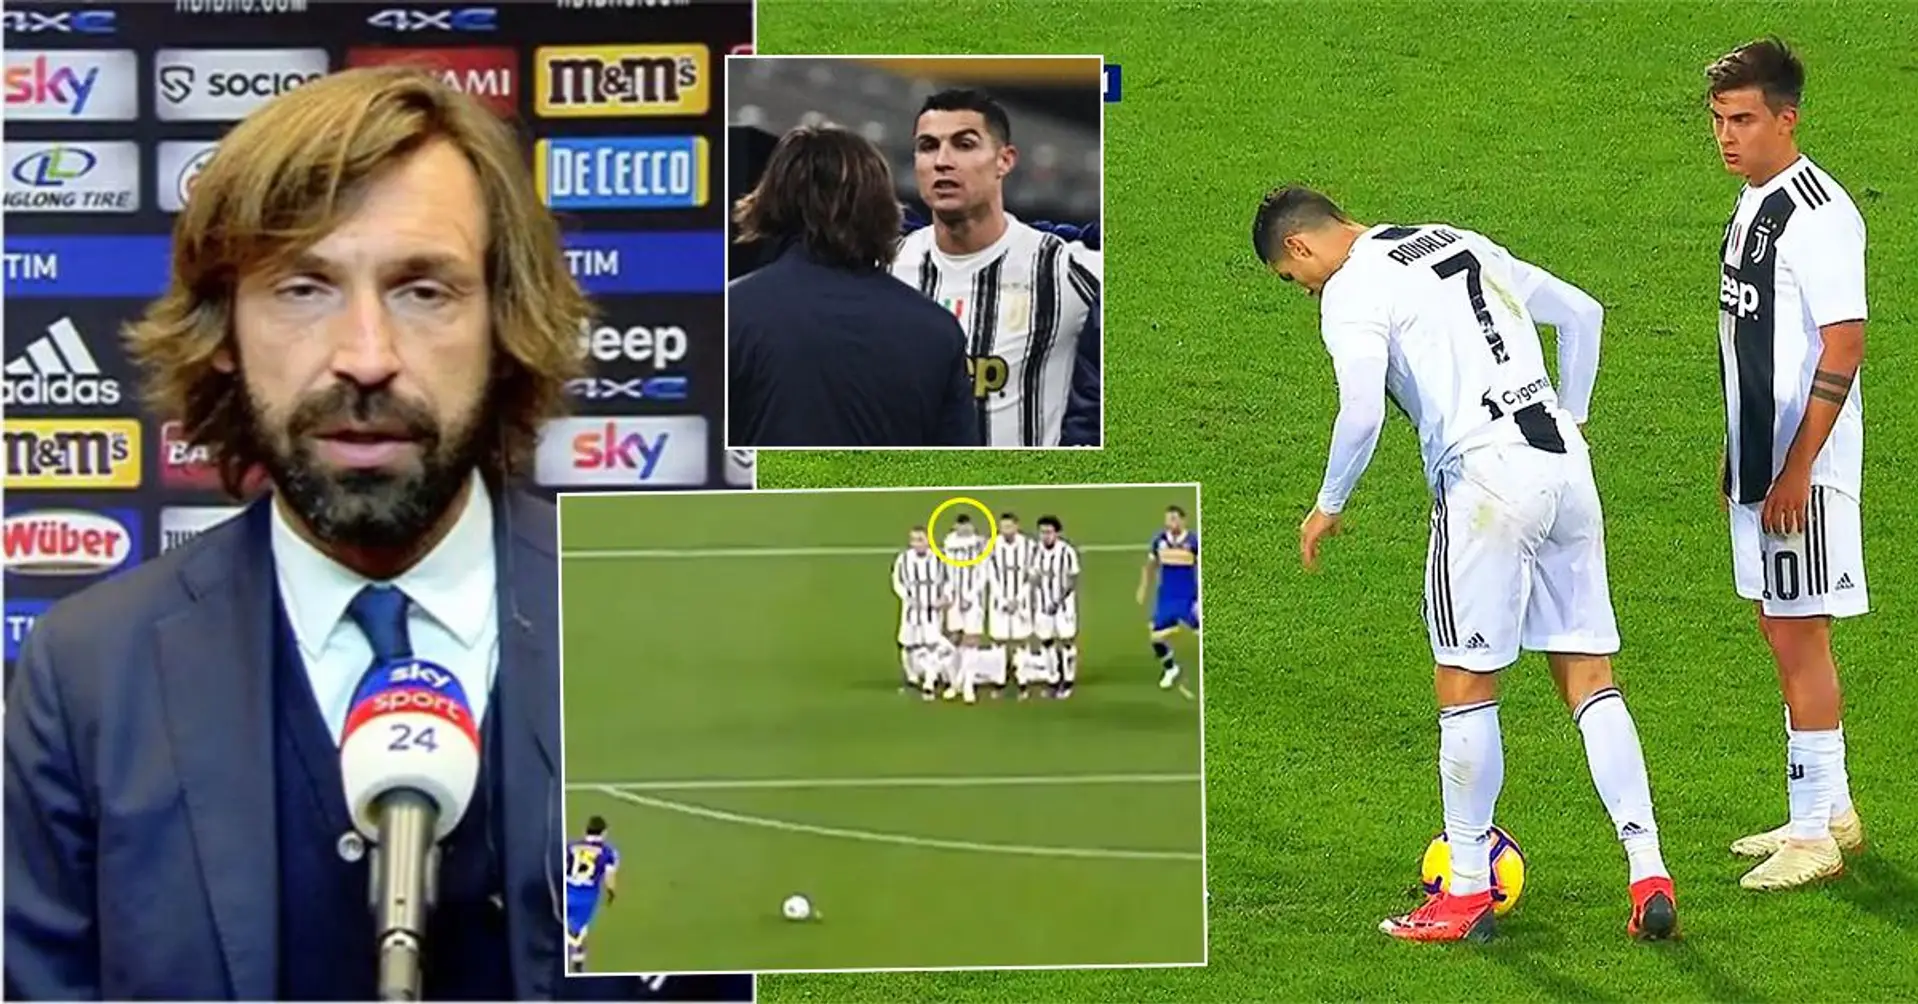 Andrea Pirlo envoie un avertissement à Cristiano Ronaldo après son comportement dangereux lors d'un coup franc